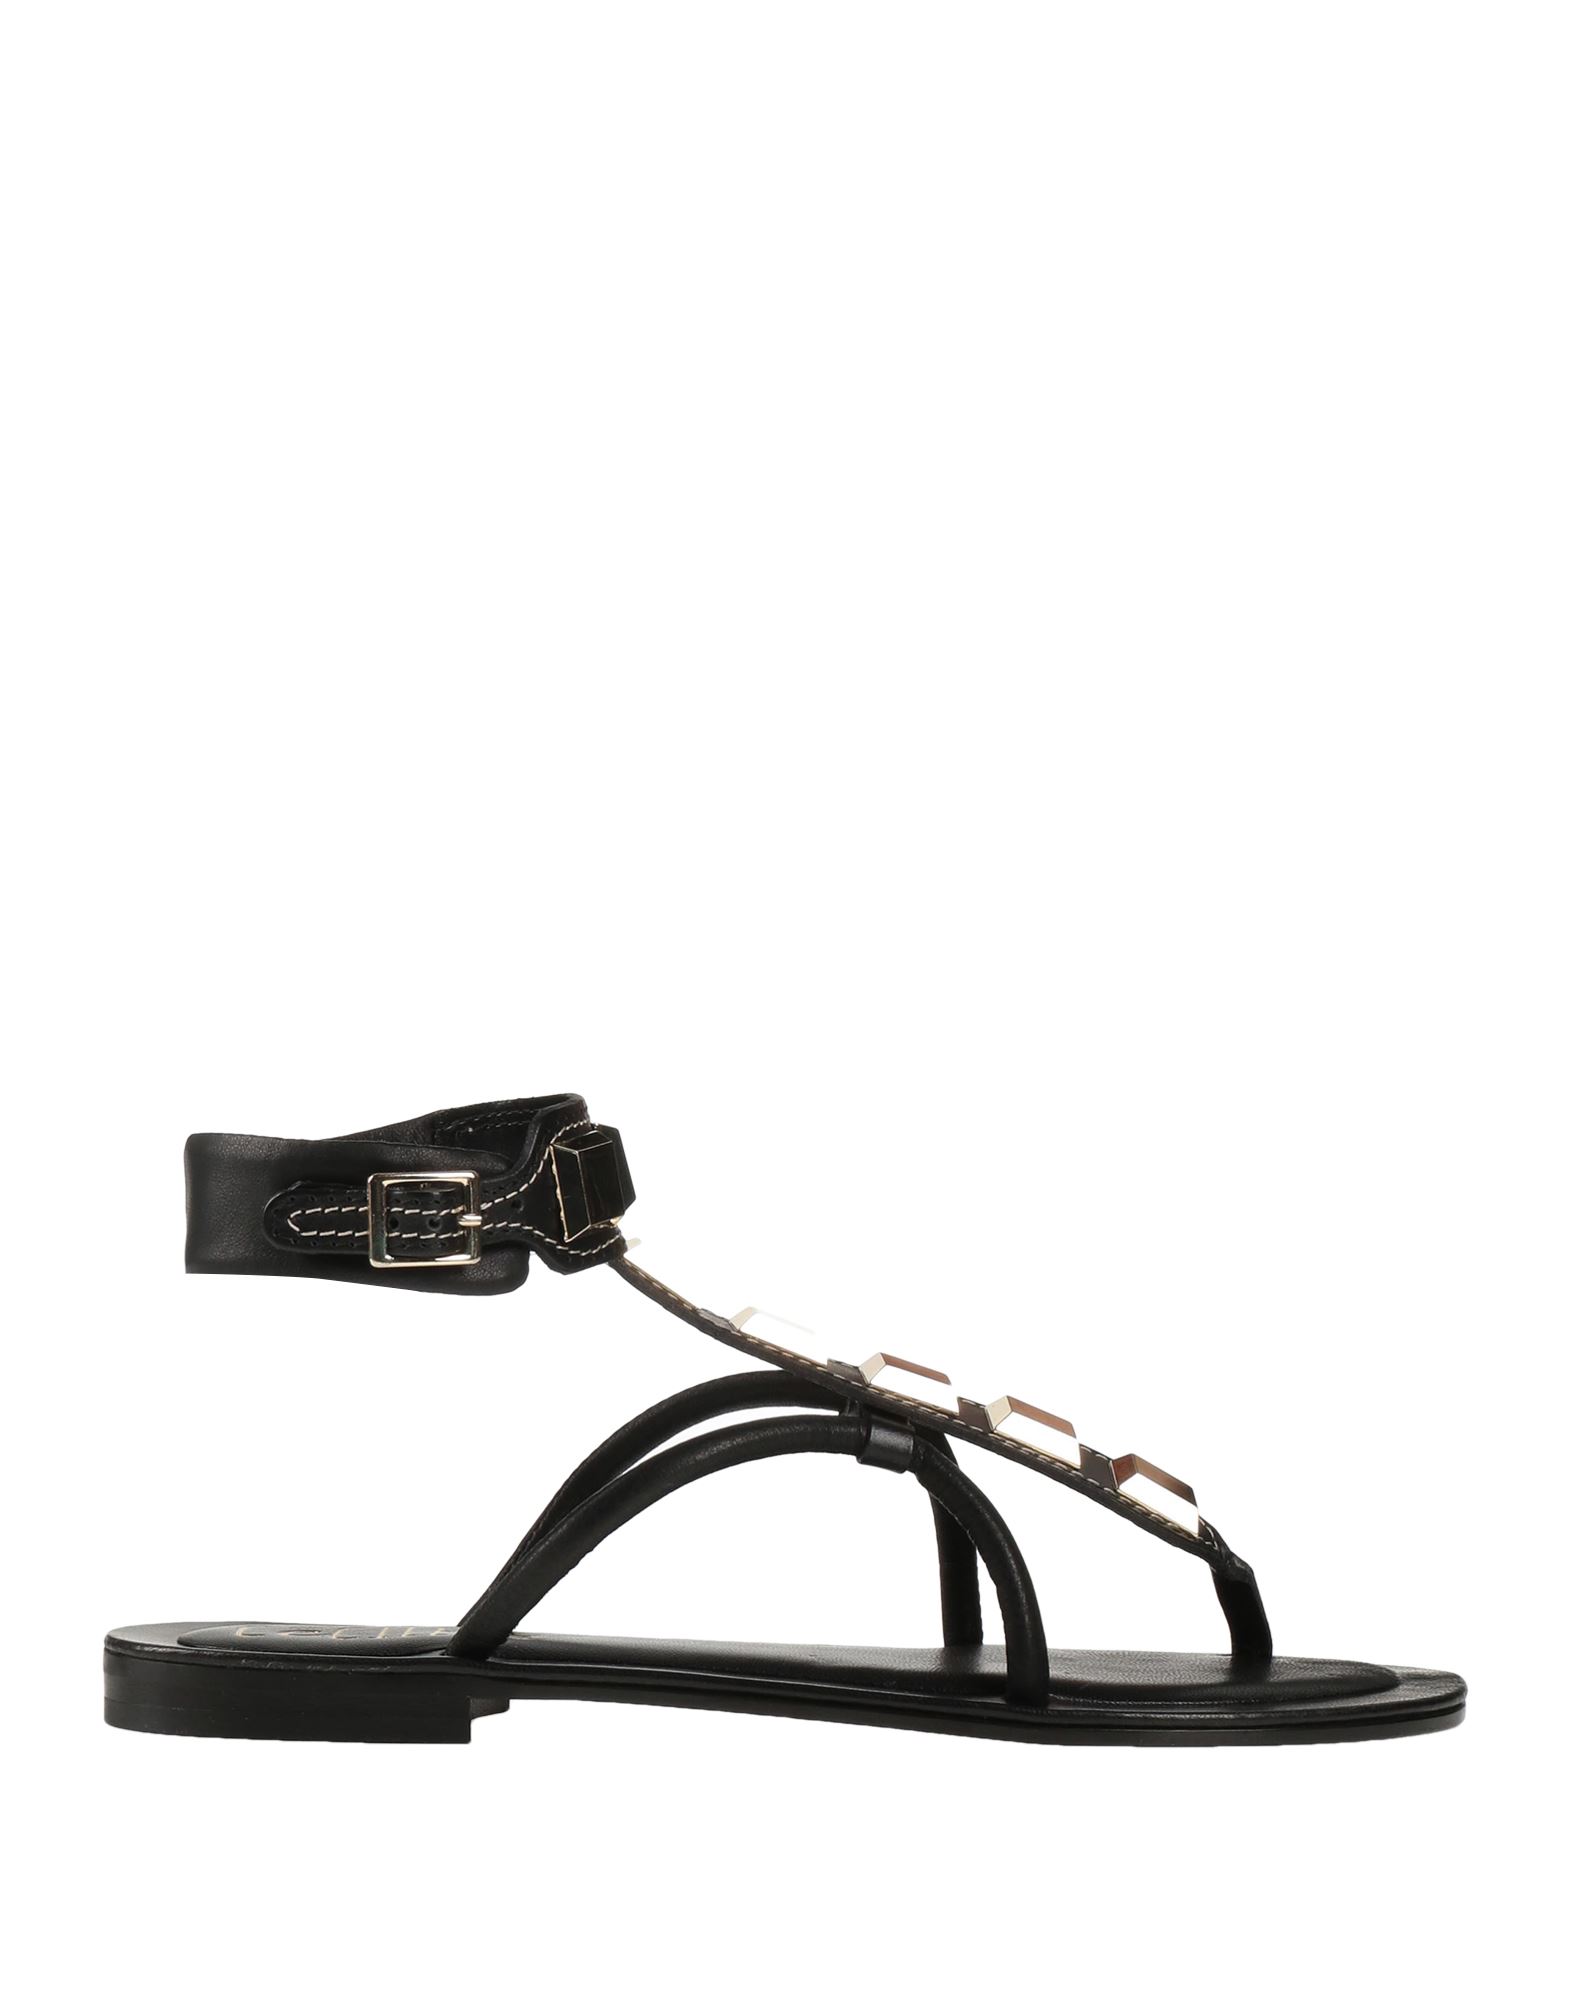 Shop Cécile Woman Thong Sandal Black Size 8 Soft Leather